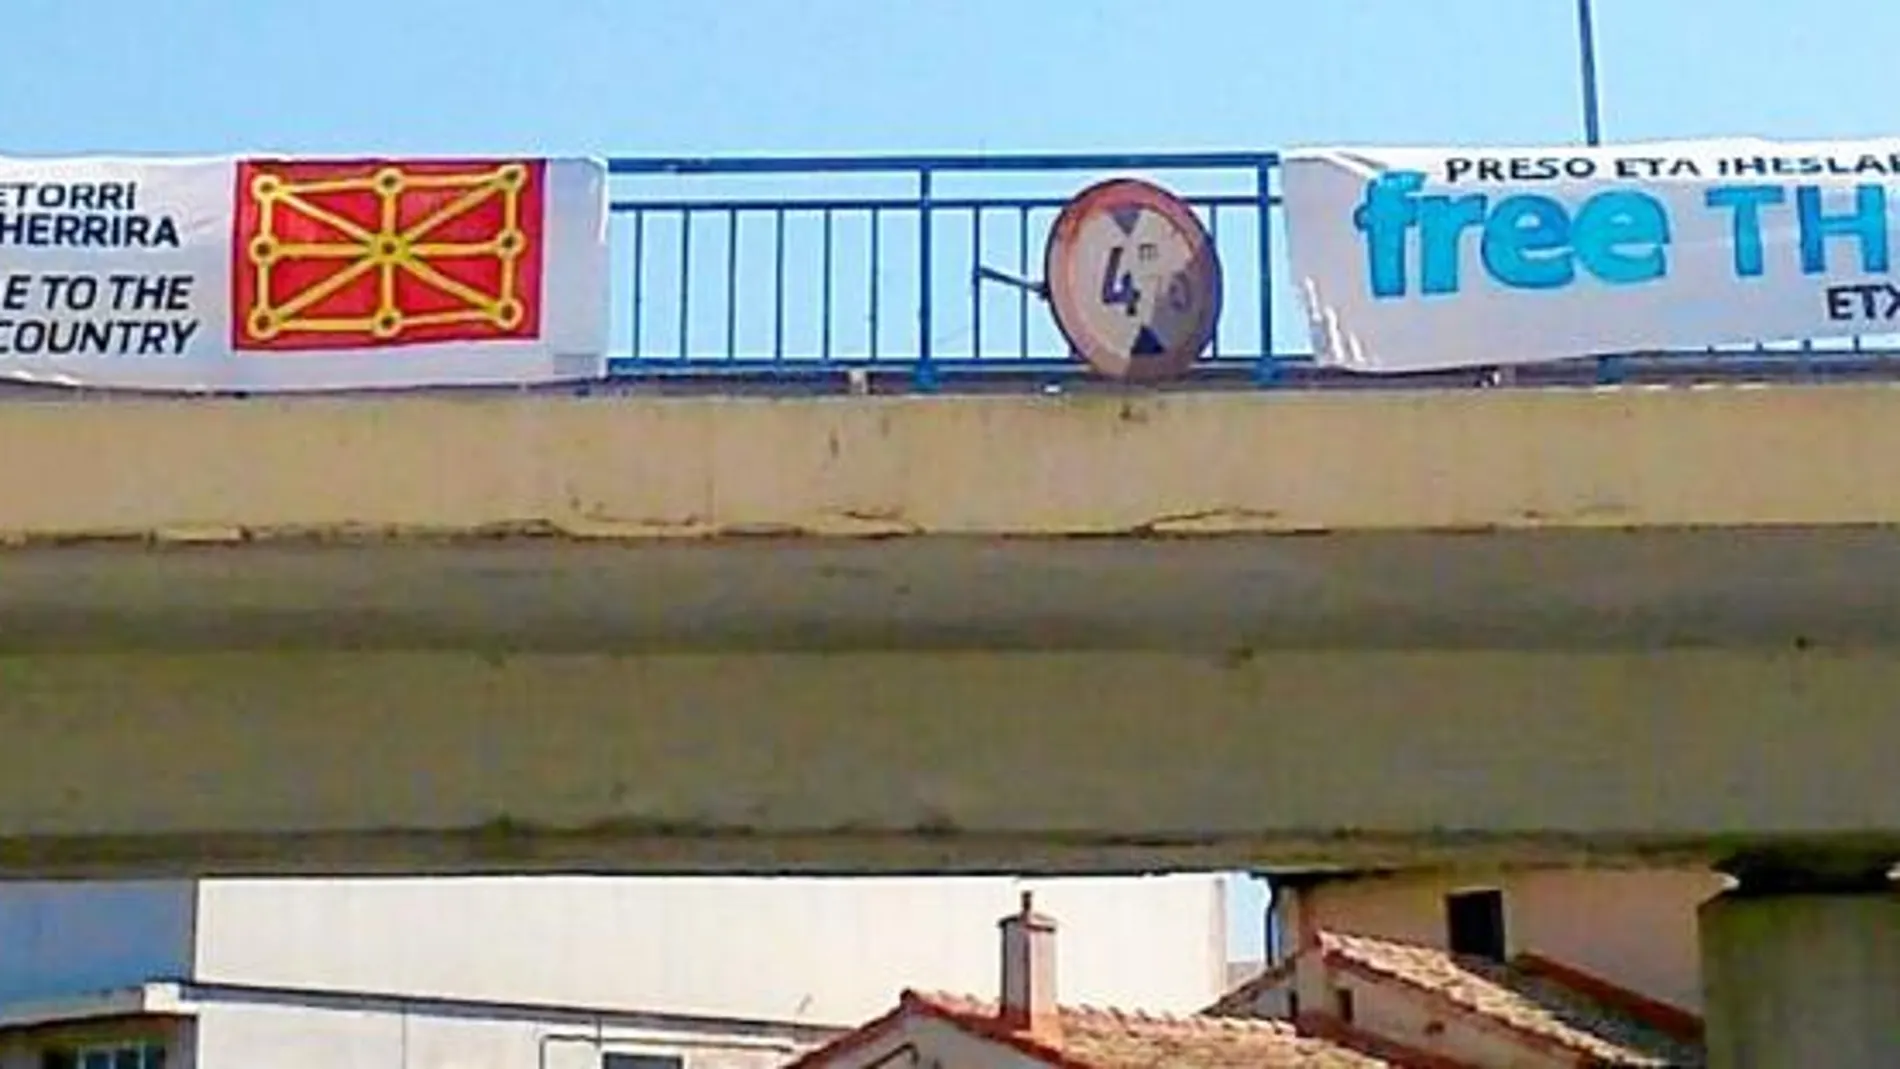 «Bienvenidos al País Vasco» en Pamplona. Varios carteles colocados a la entrada de la ciudad de Pamplona dan la bienvenida a Euskal Herria y defienden la liberación de presos